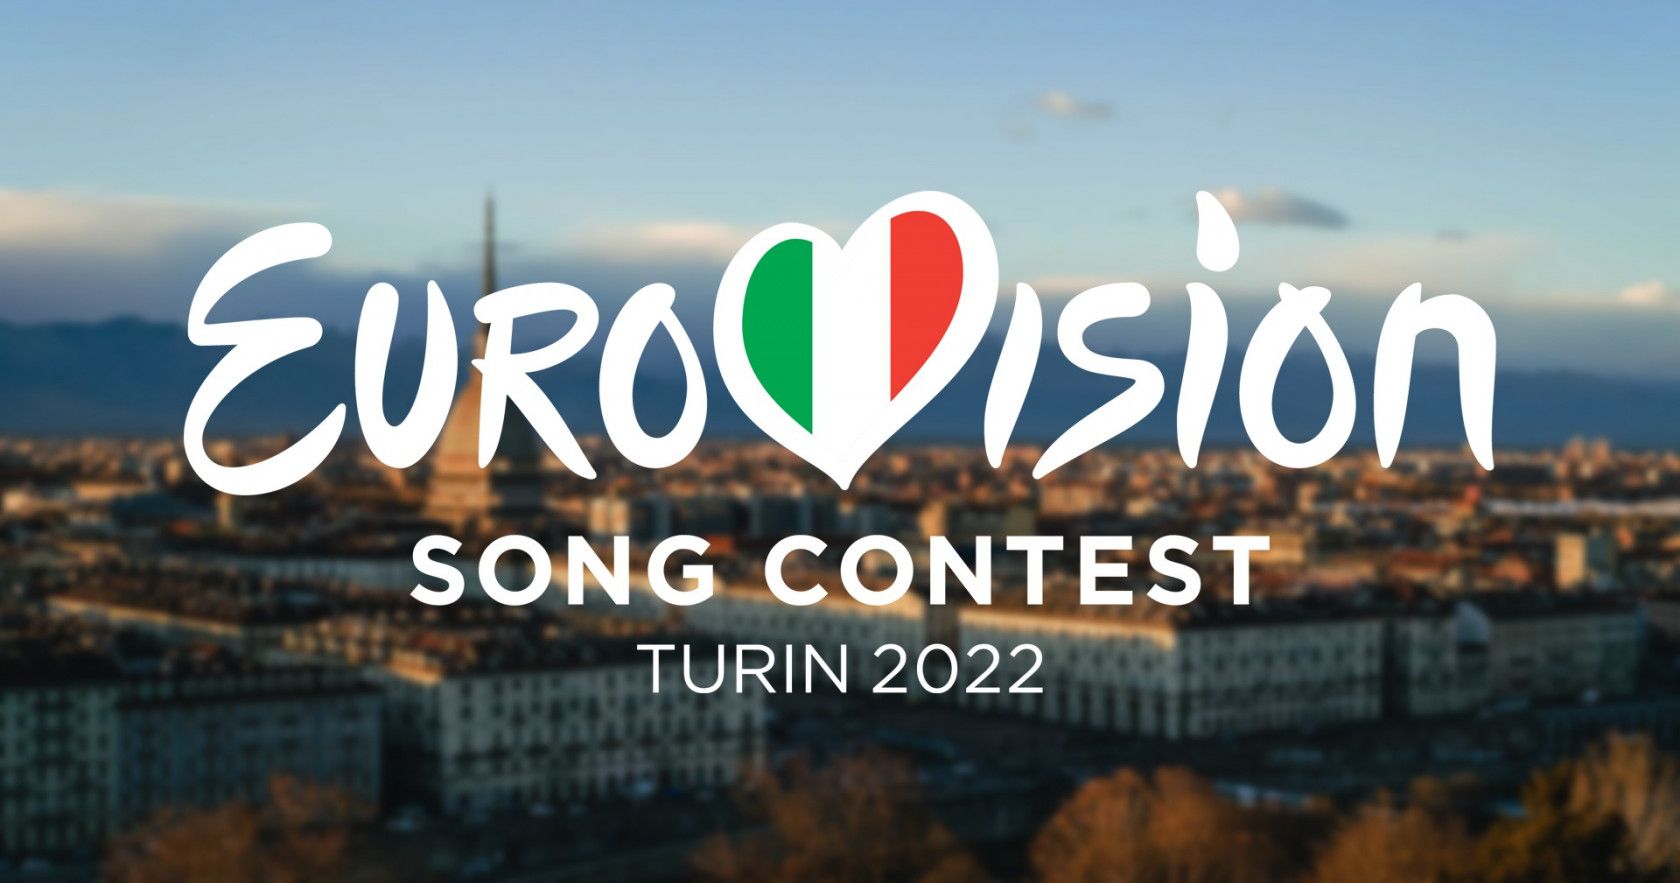 «Євробачення-2022» відбудеться в Турині